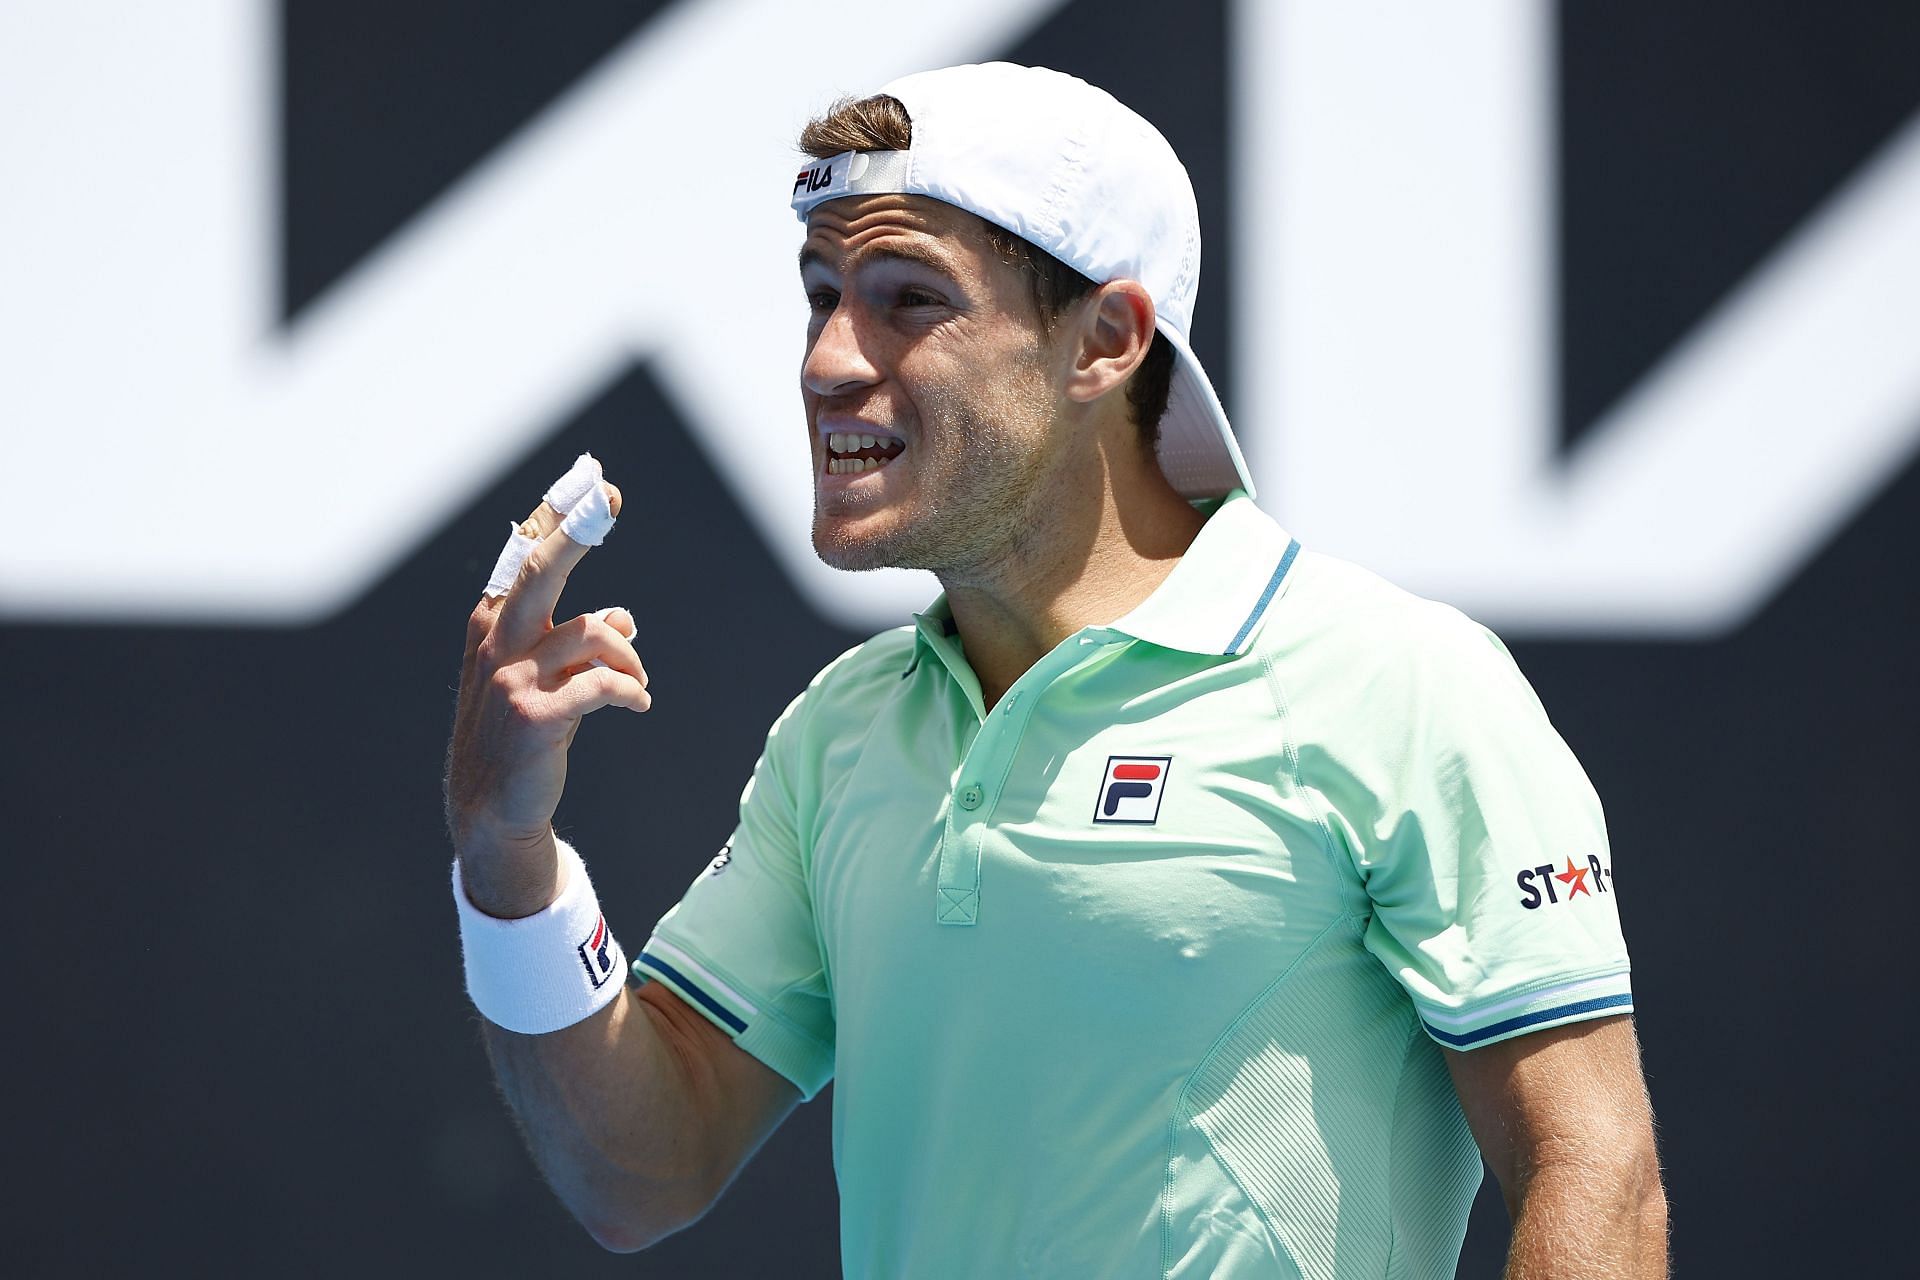 Diego Schwartzman gestures during a match at the 2022 Australian Open